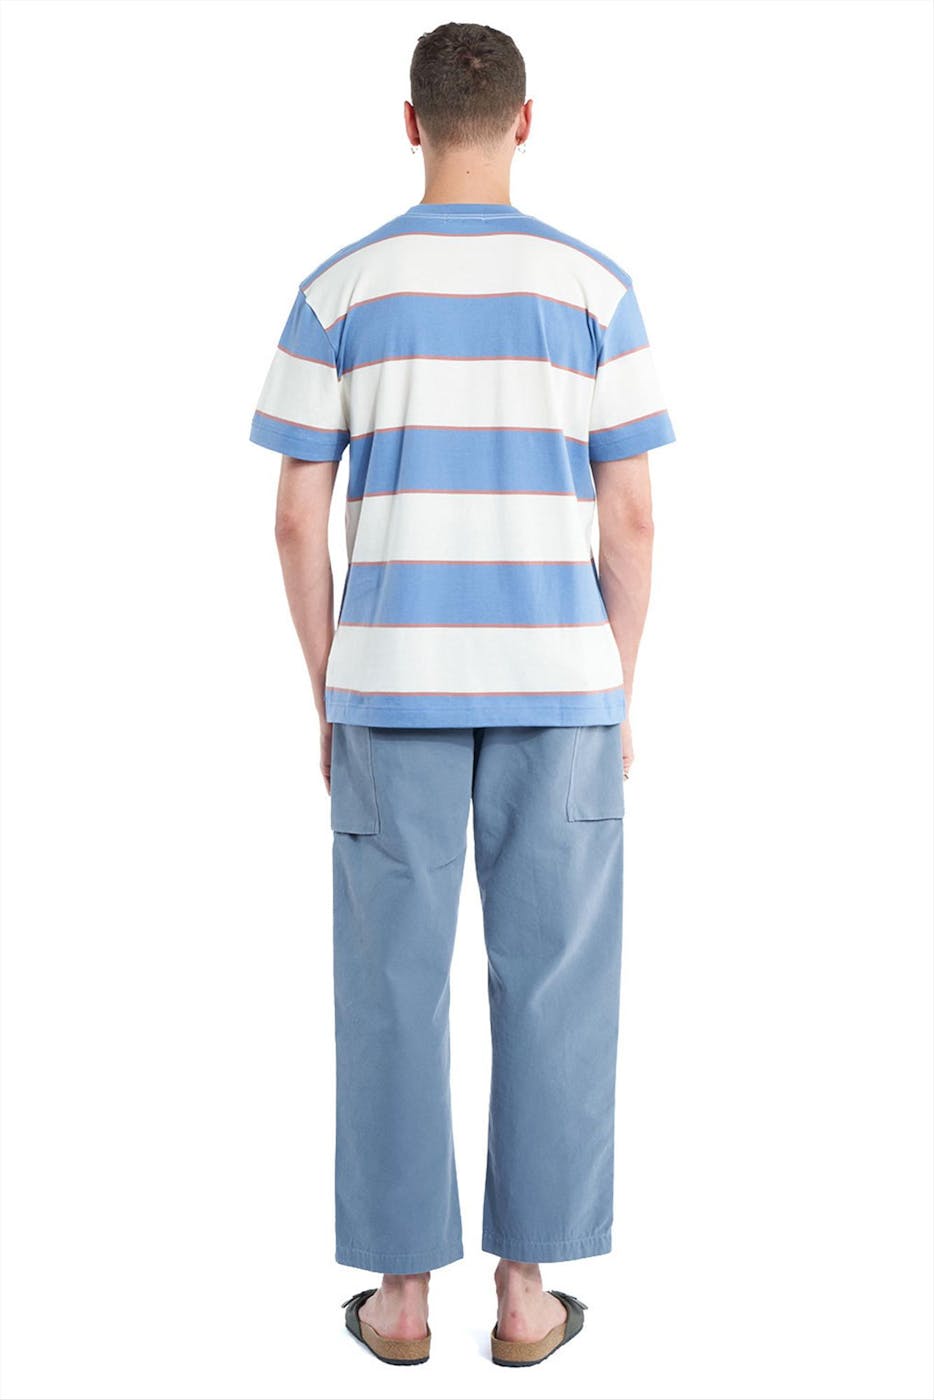 OLOW - Lichtblauwe Cody T-shirt